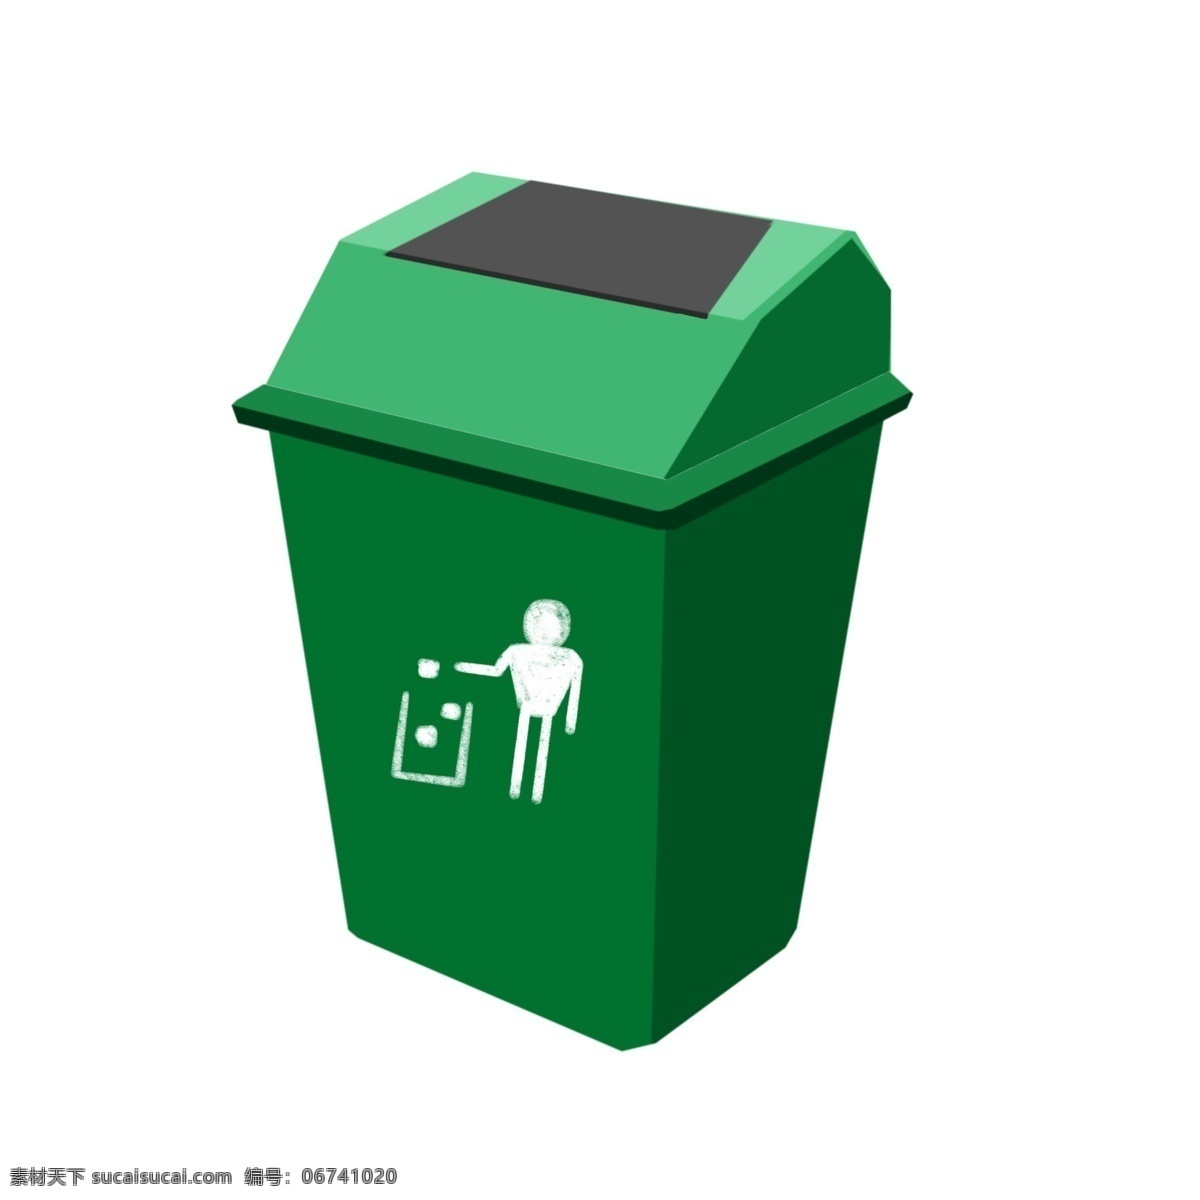 绿色 厨房 垃圾桶 插画 绿色的垃圾桶 漂亮的垃圾桶 手绘垃圾桶 厨房垃圾桶 垃圾桶装饰 垃圾桶插画